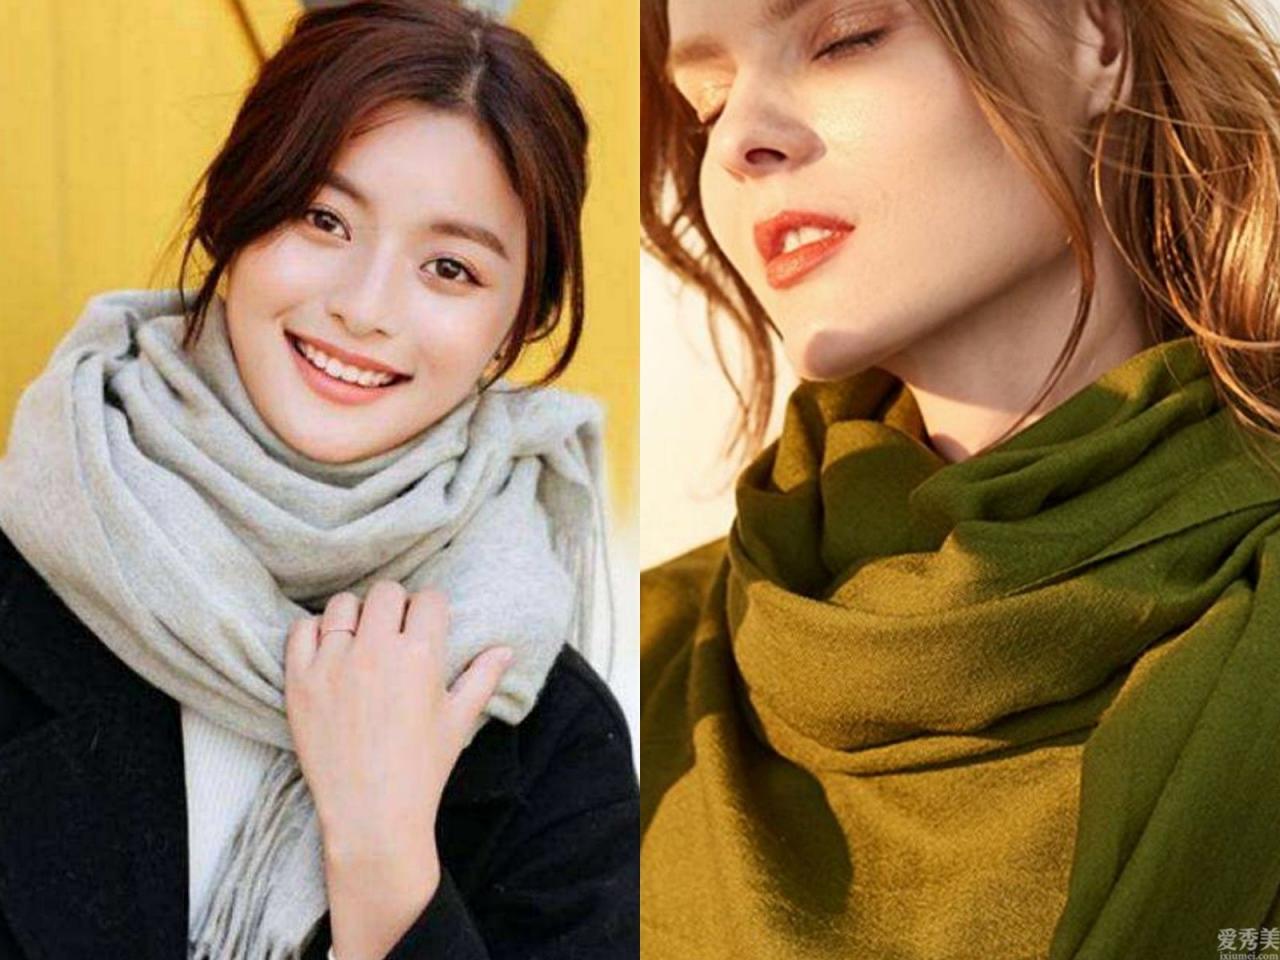 一條圍巾的6種戴法，潮流趨勢又好搭，處理庸俗變為韓劇女主角